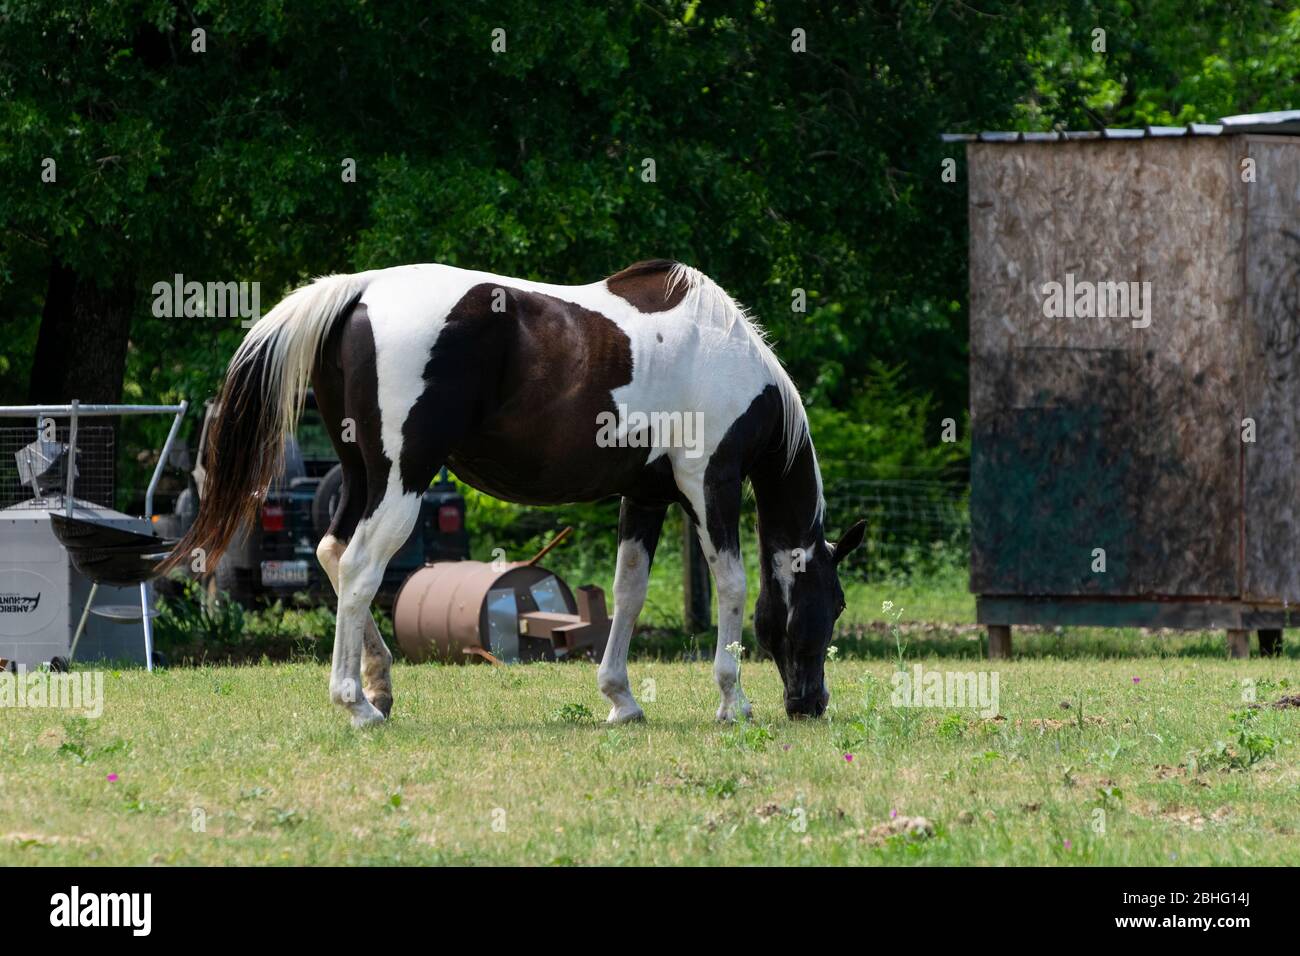 Un beau cheval de peinture marron et blanc paint sur l'herbe verte dans un pâturage de ranch encombré de ferrailleries et de débris. Banque D'Images